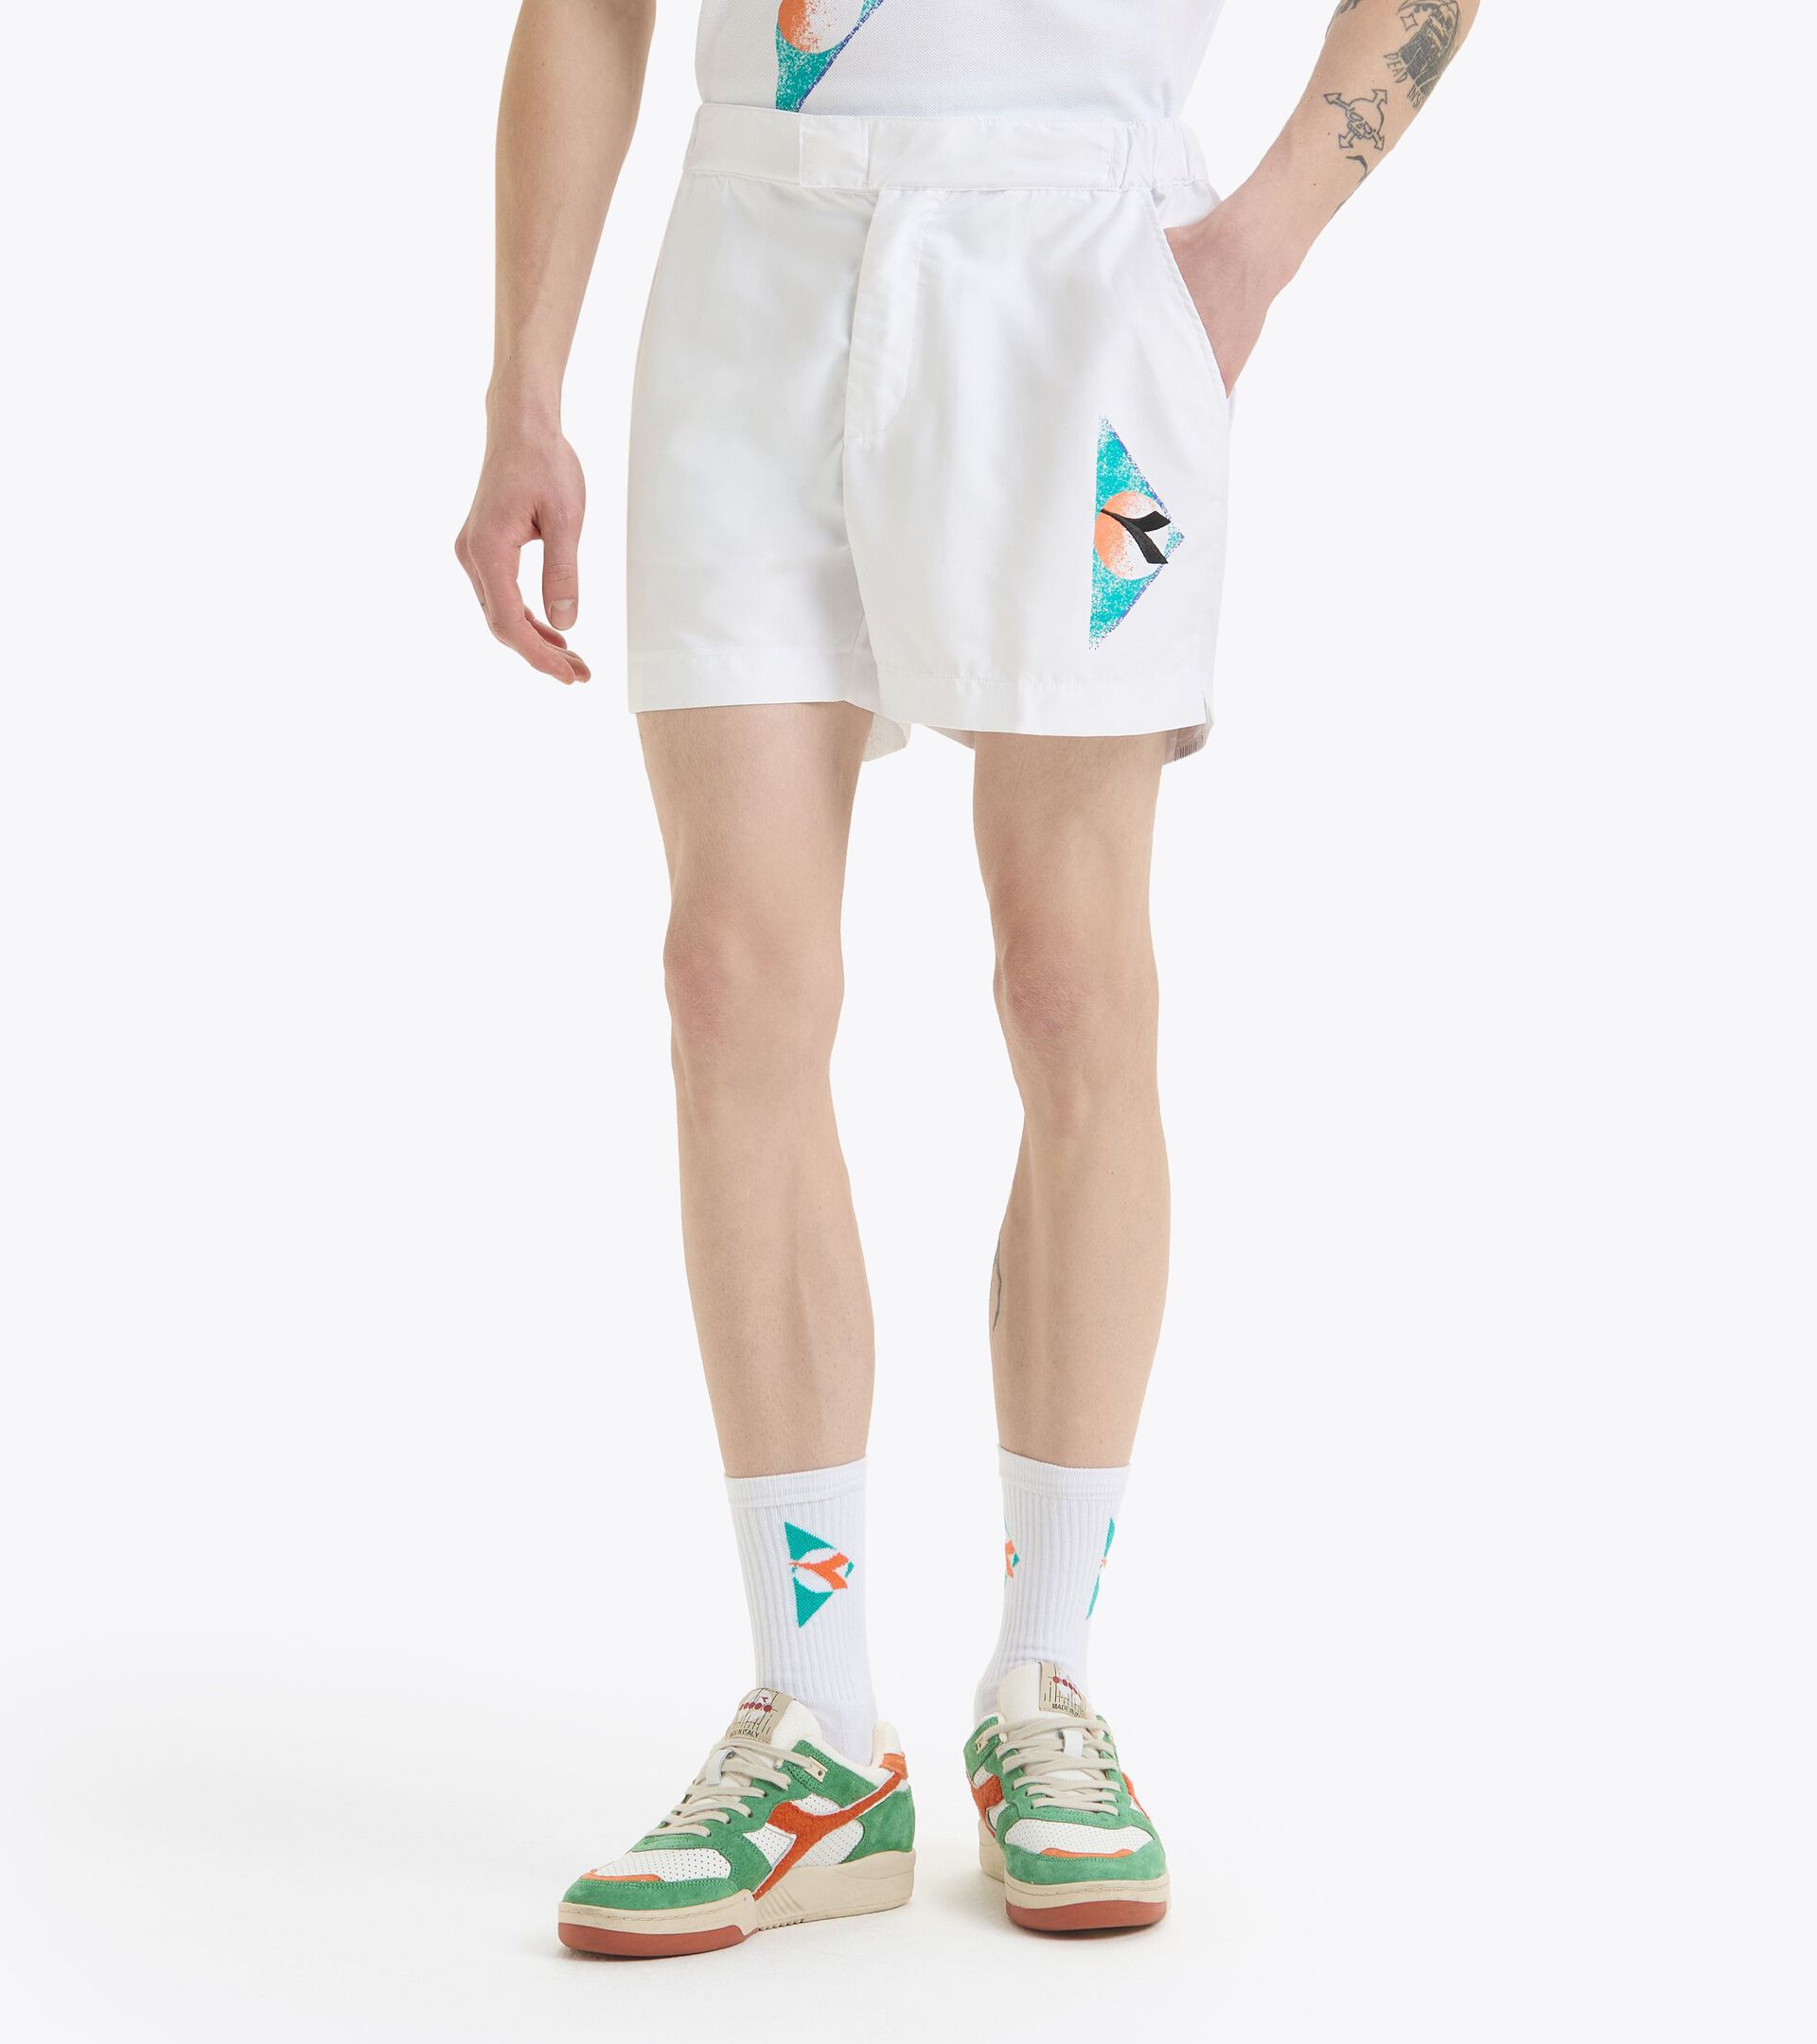 Shorts im Stil der 90er Jahre - made in Italy - Herren SHORTS TENNIS 90 STRAHLEND WEISSE - Diadora